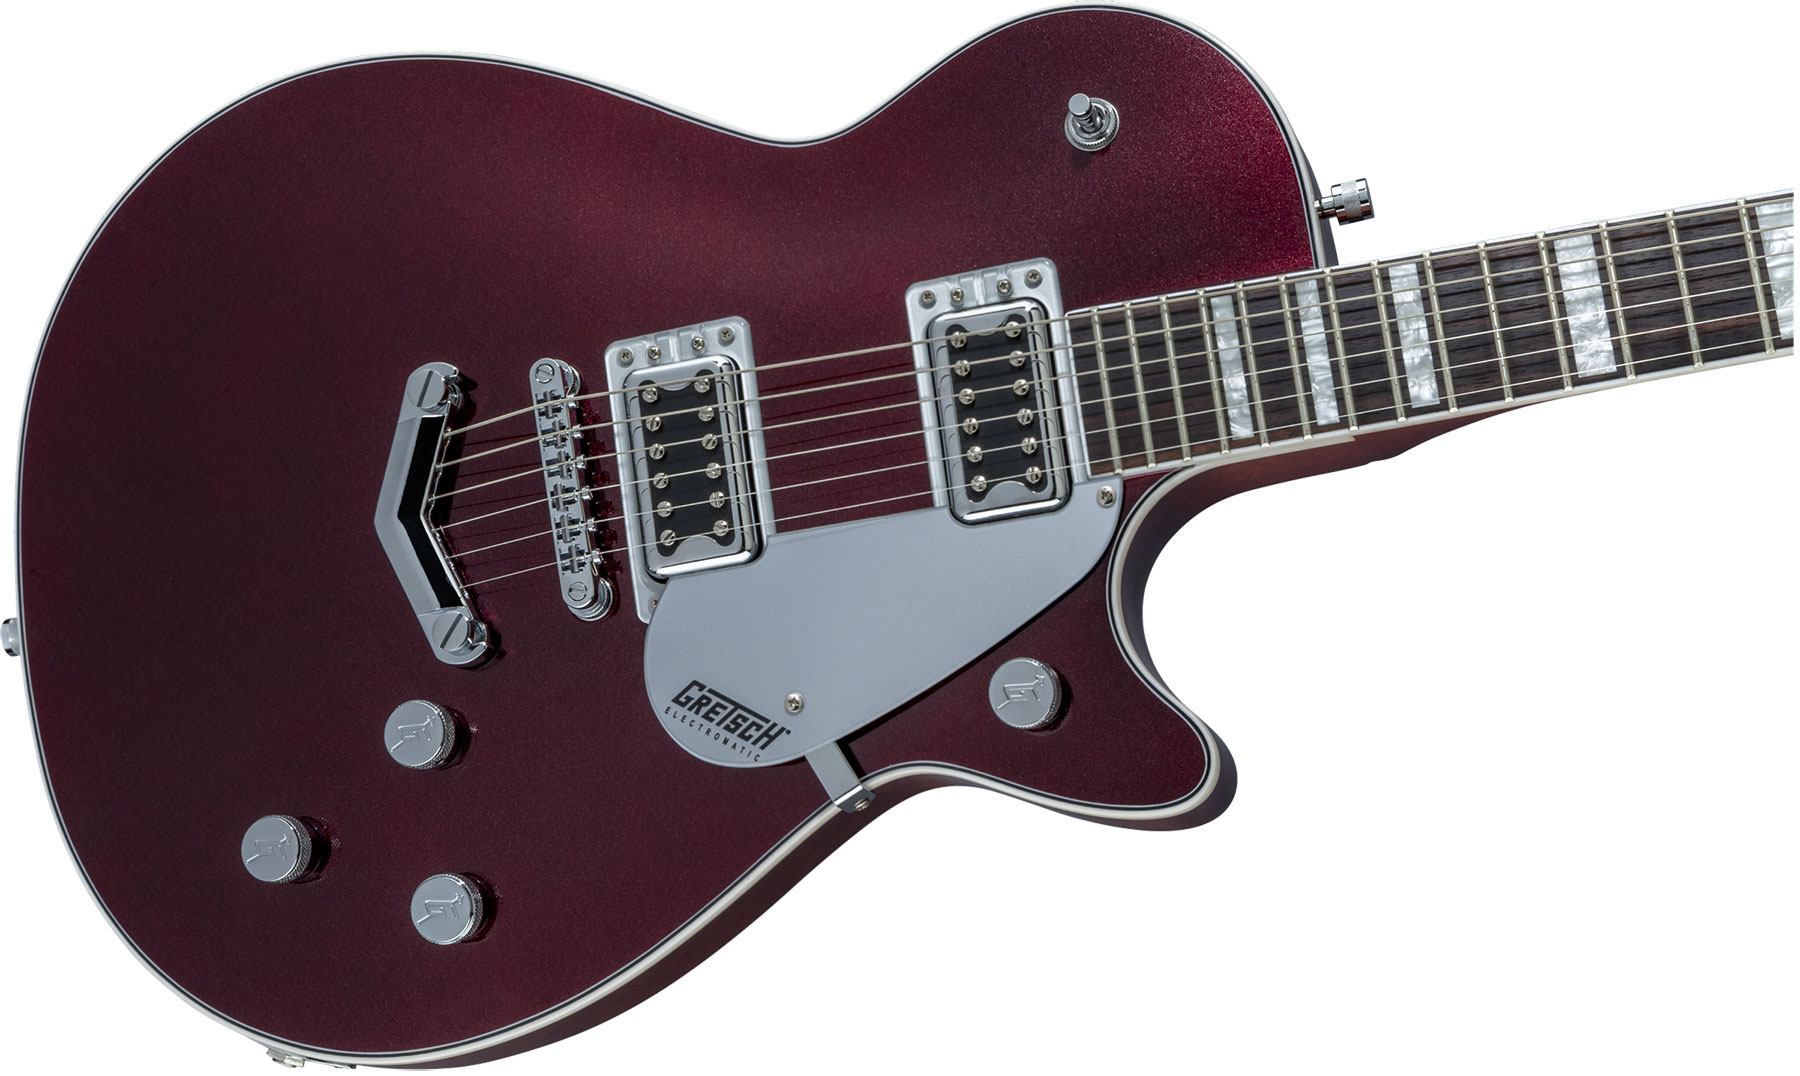 Gretsch G5220 Electromatic Jet Bt V-stoptail Hh Ht Wal - Dark Cherry Metallic - Enkel gesneden elektrische gitaar - Variation 2